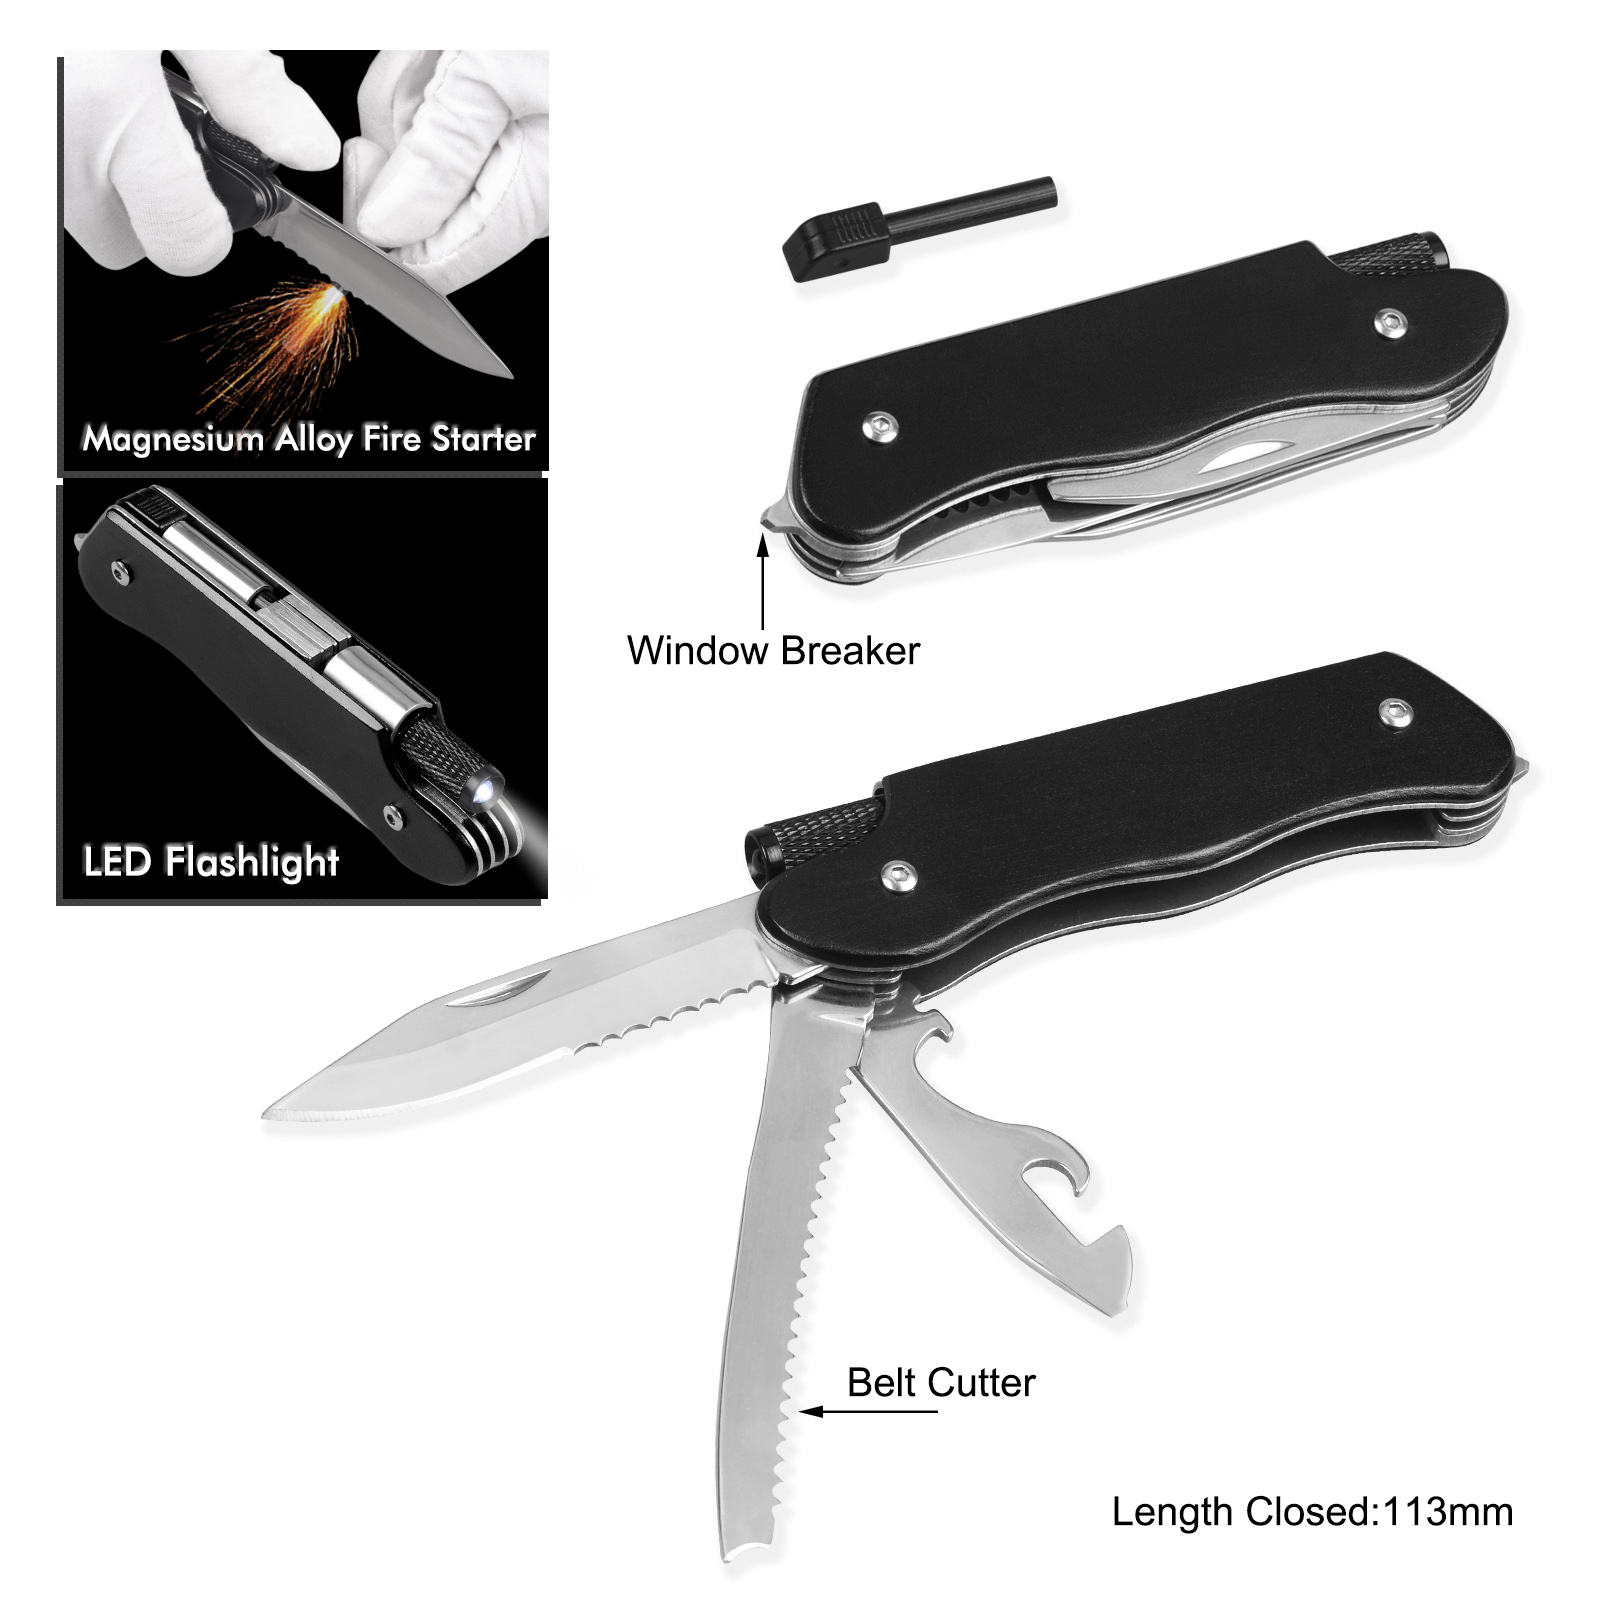 #6298 Multi Function Pocket Knife with LED Flashlight